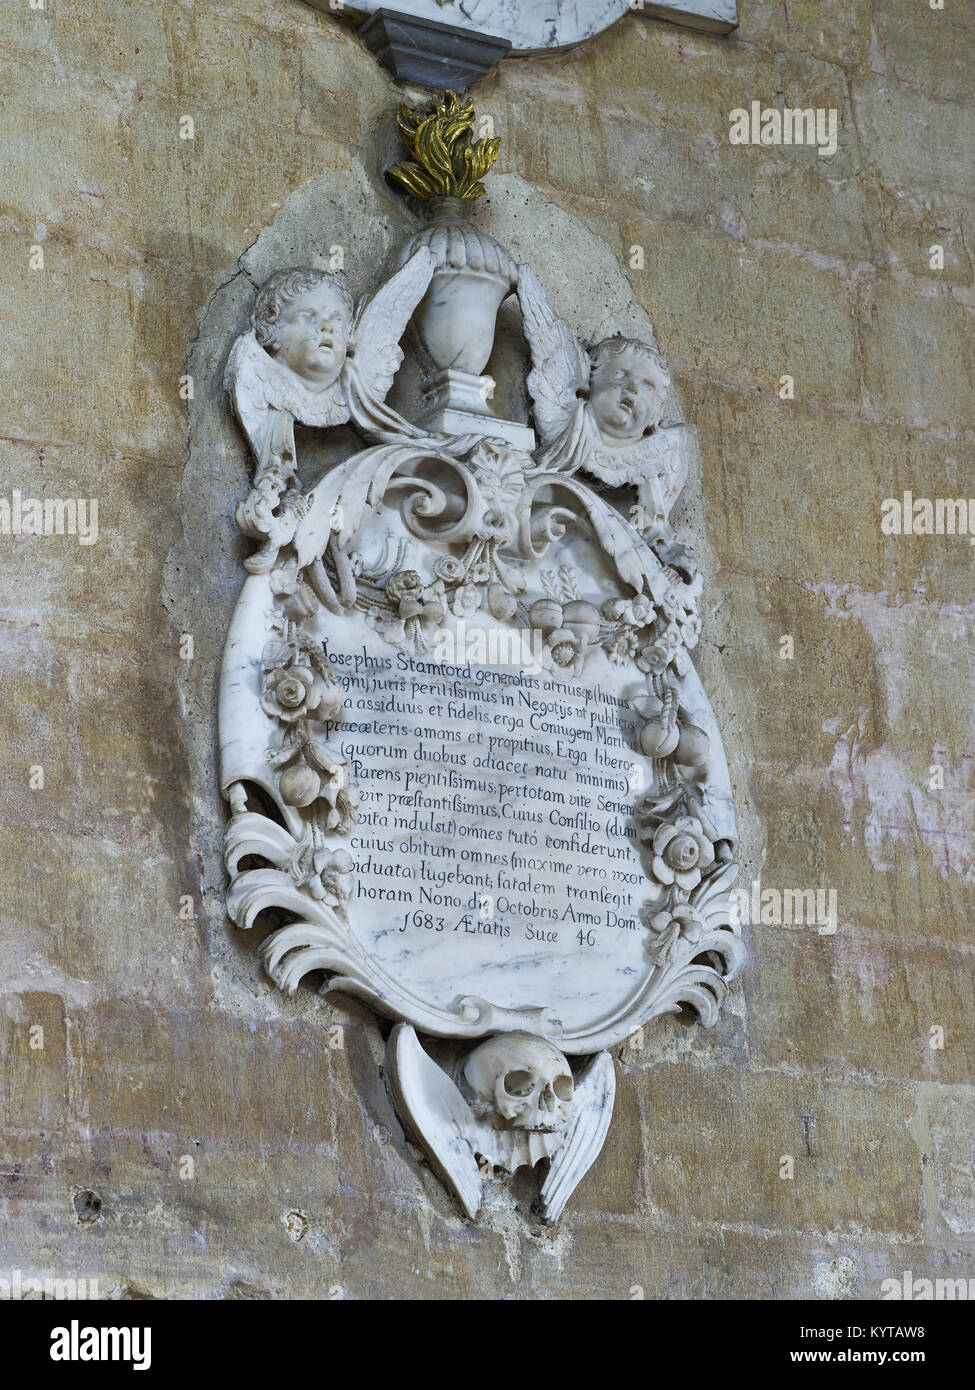 Peterborough Cathedral. Barocco parete in marmo lapide che ricorda Giuseppe Stamford, datata 1683. Mostra due putti supporing una fiammante urna, con ghirlande Foto Stock